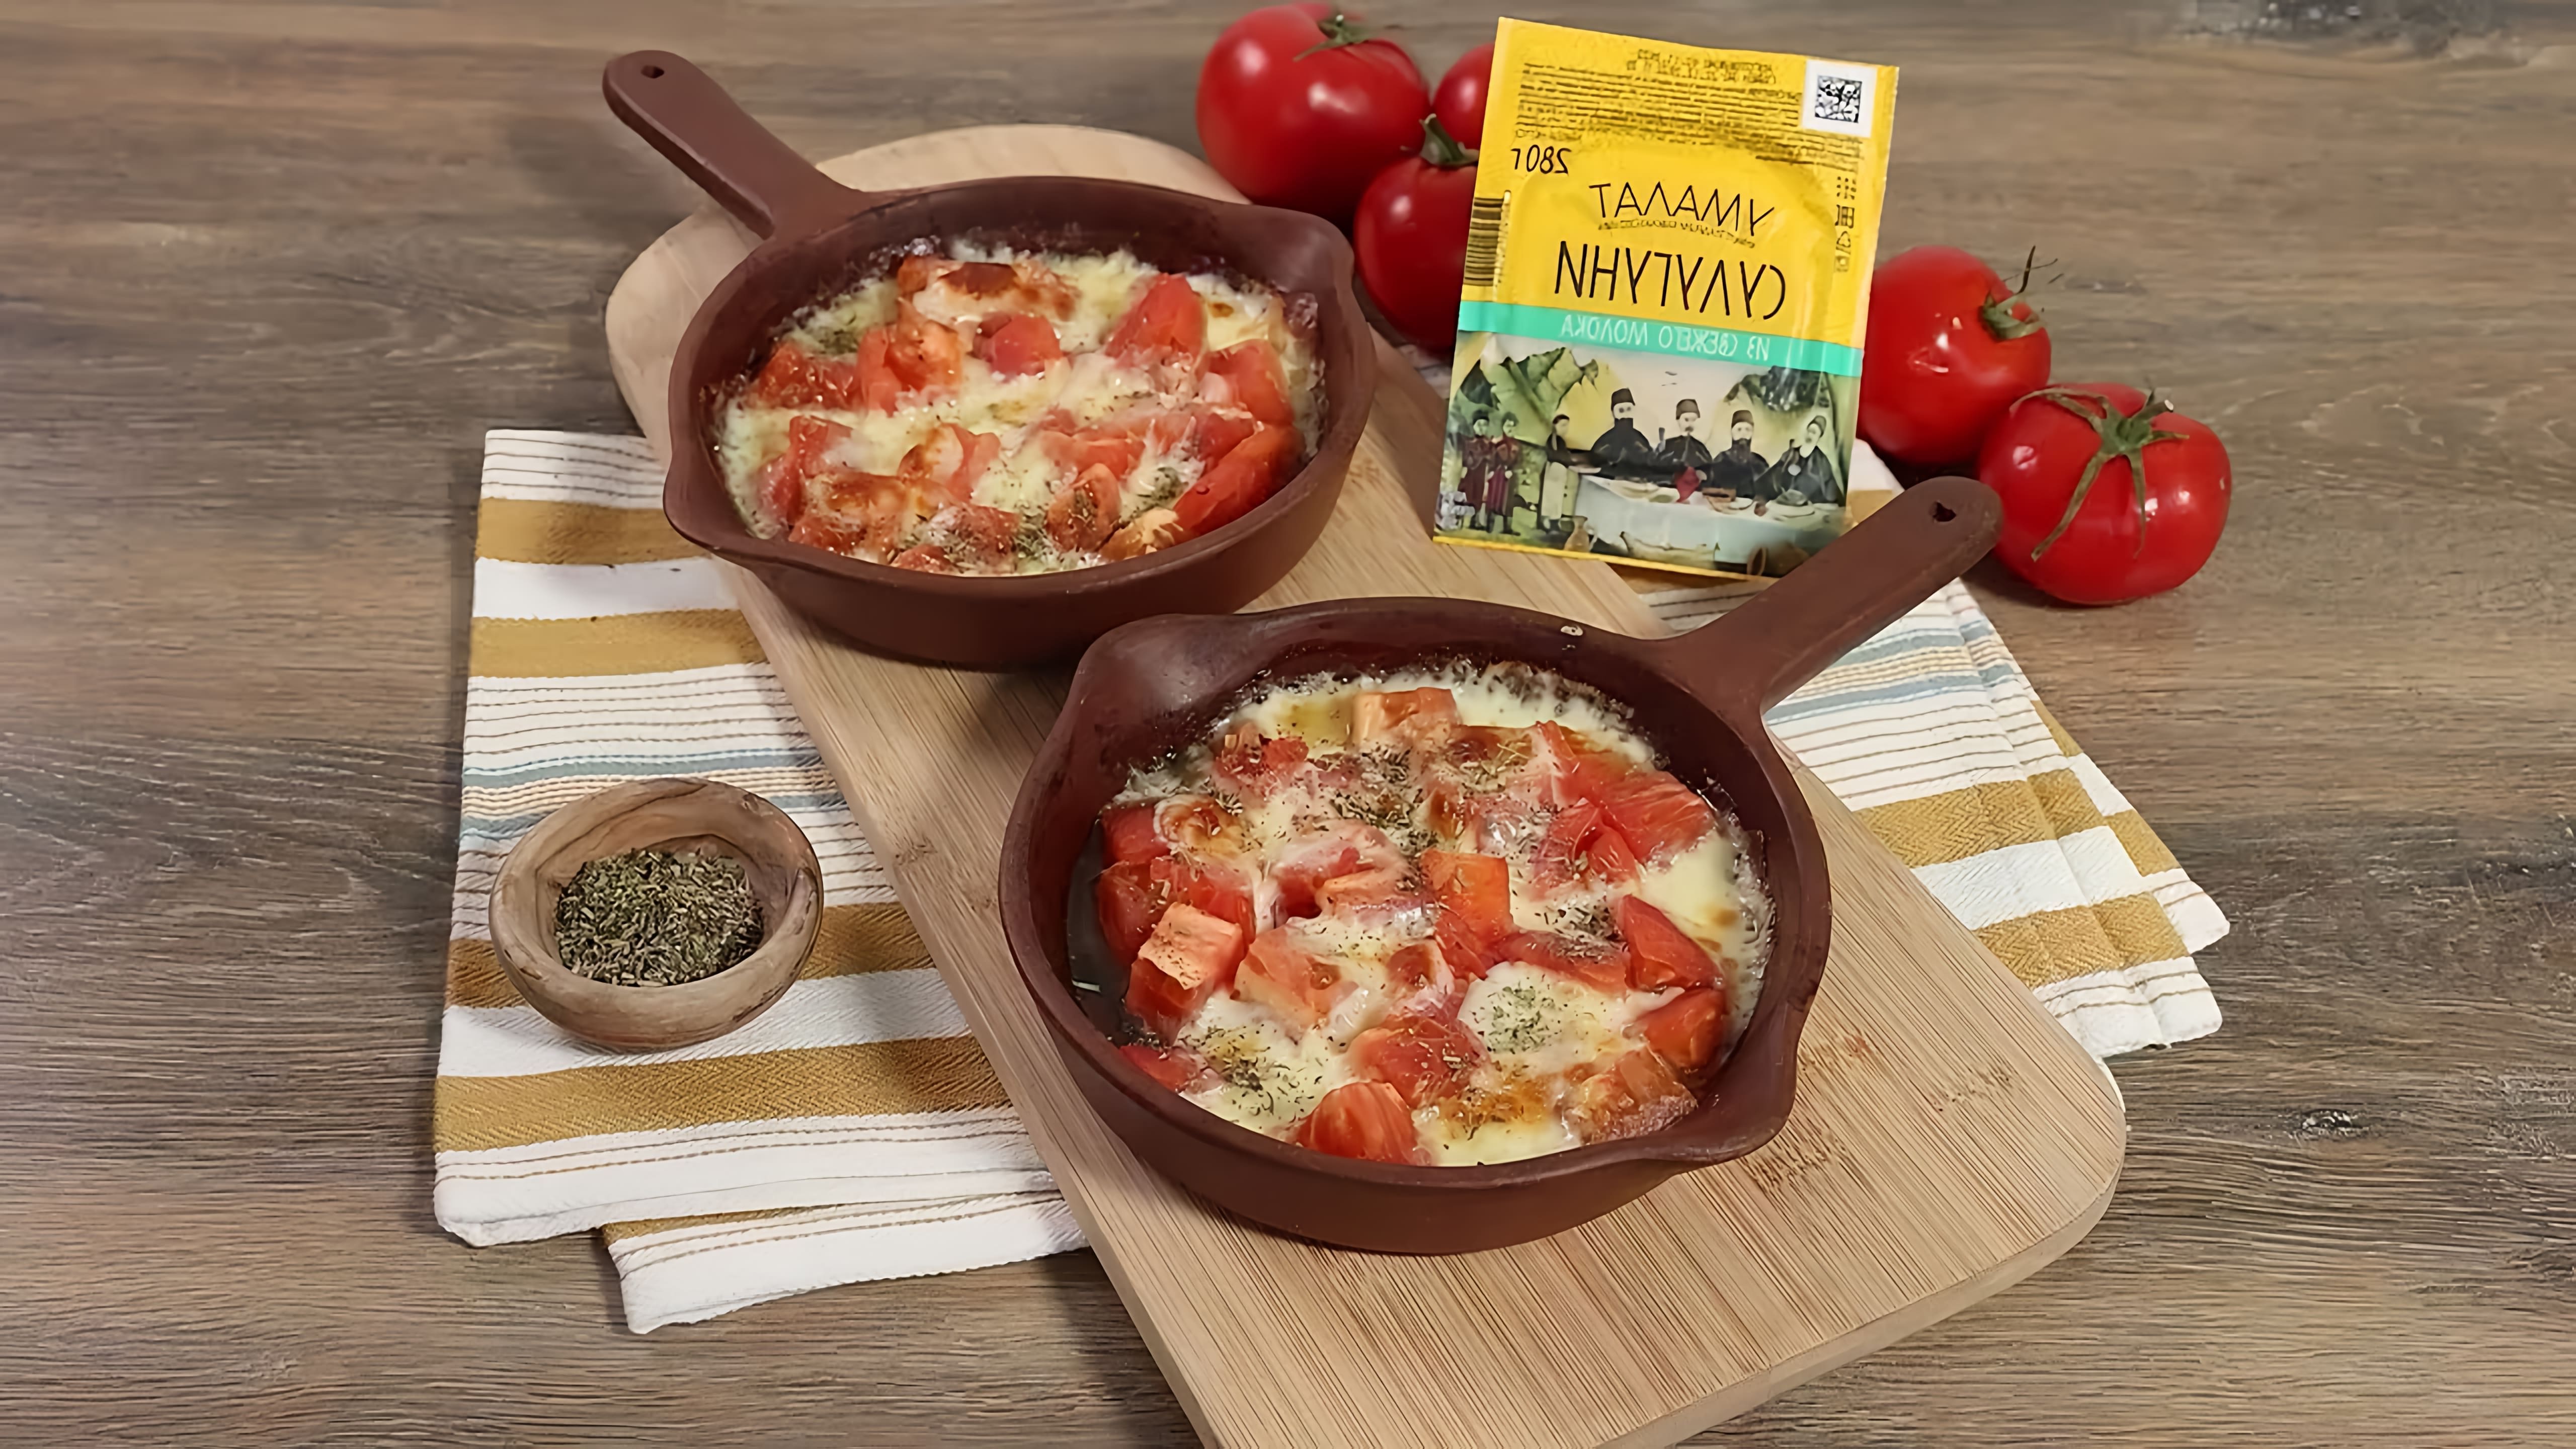 Запеченные помидоры с сулугуни - это вкусное и простое блюдо, которое можно приготовить в домашних условиях